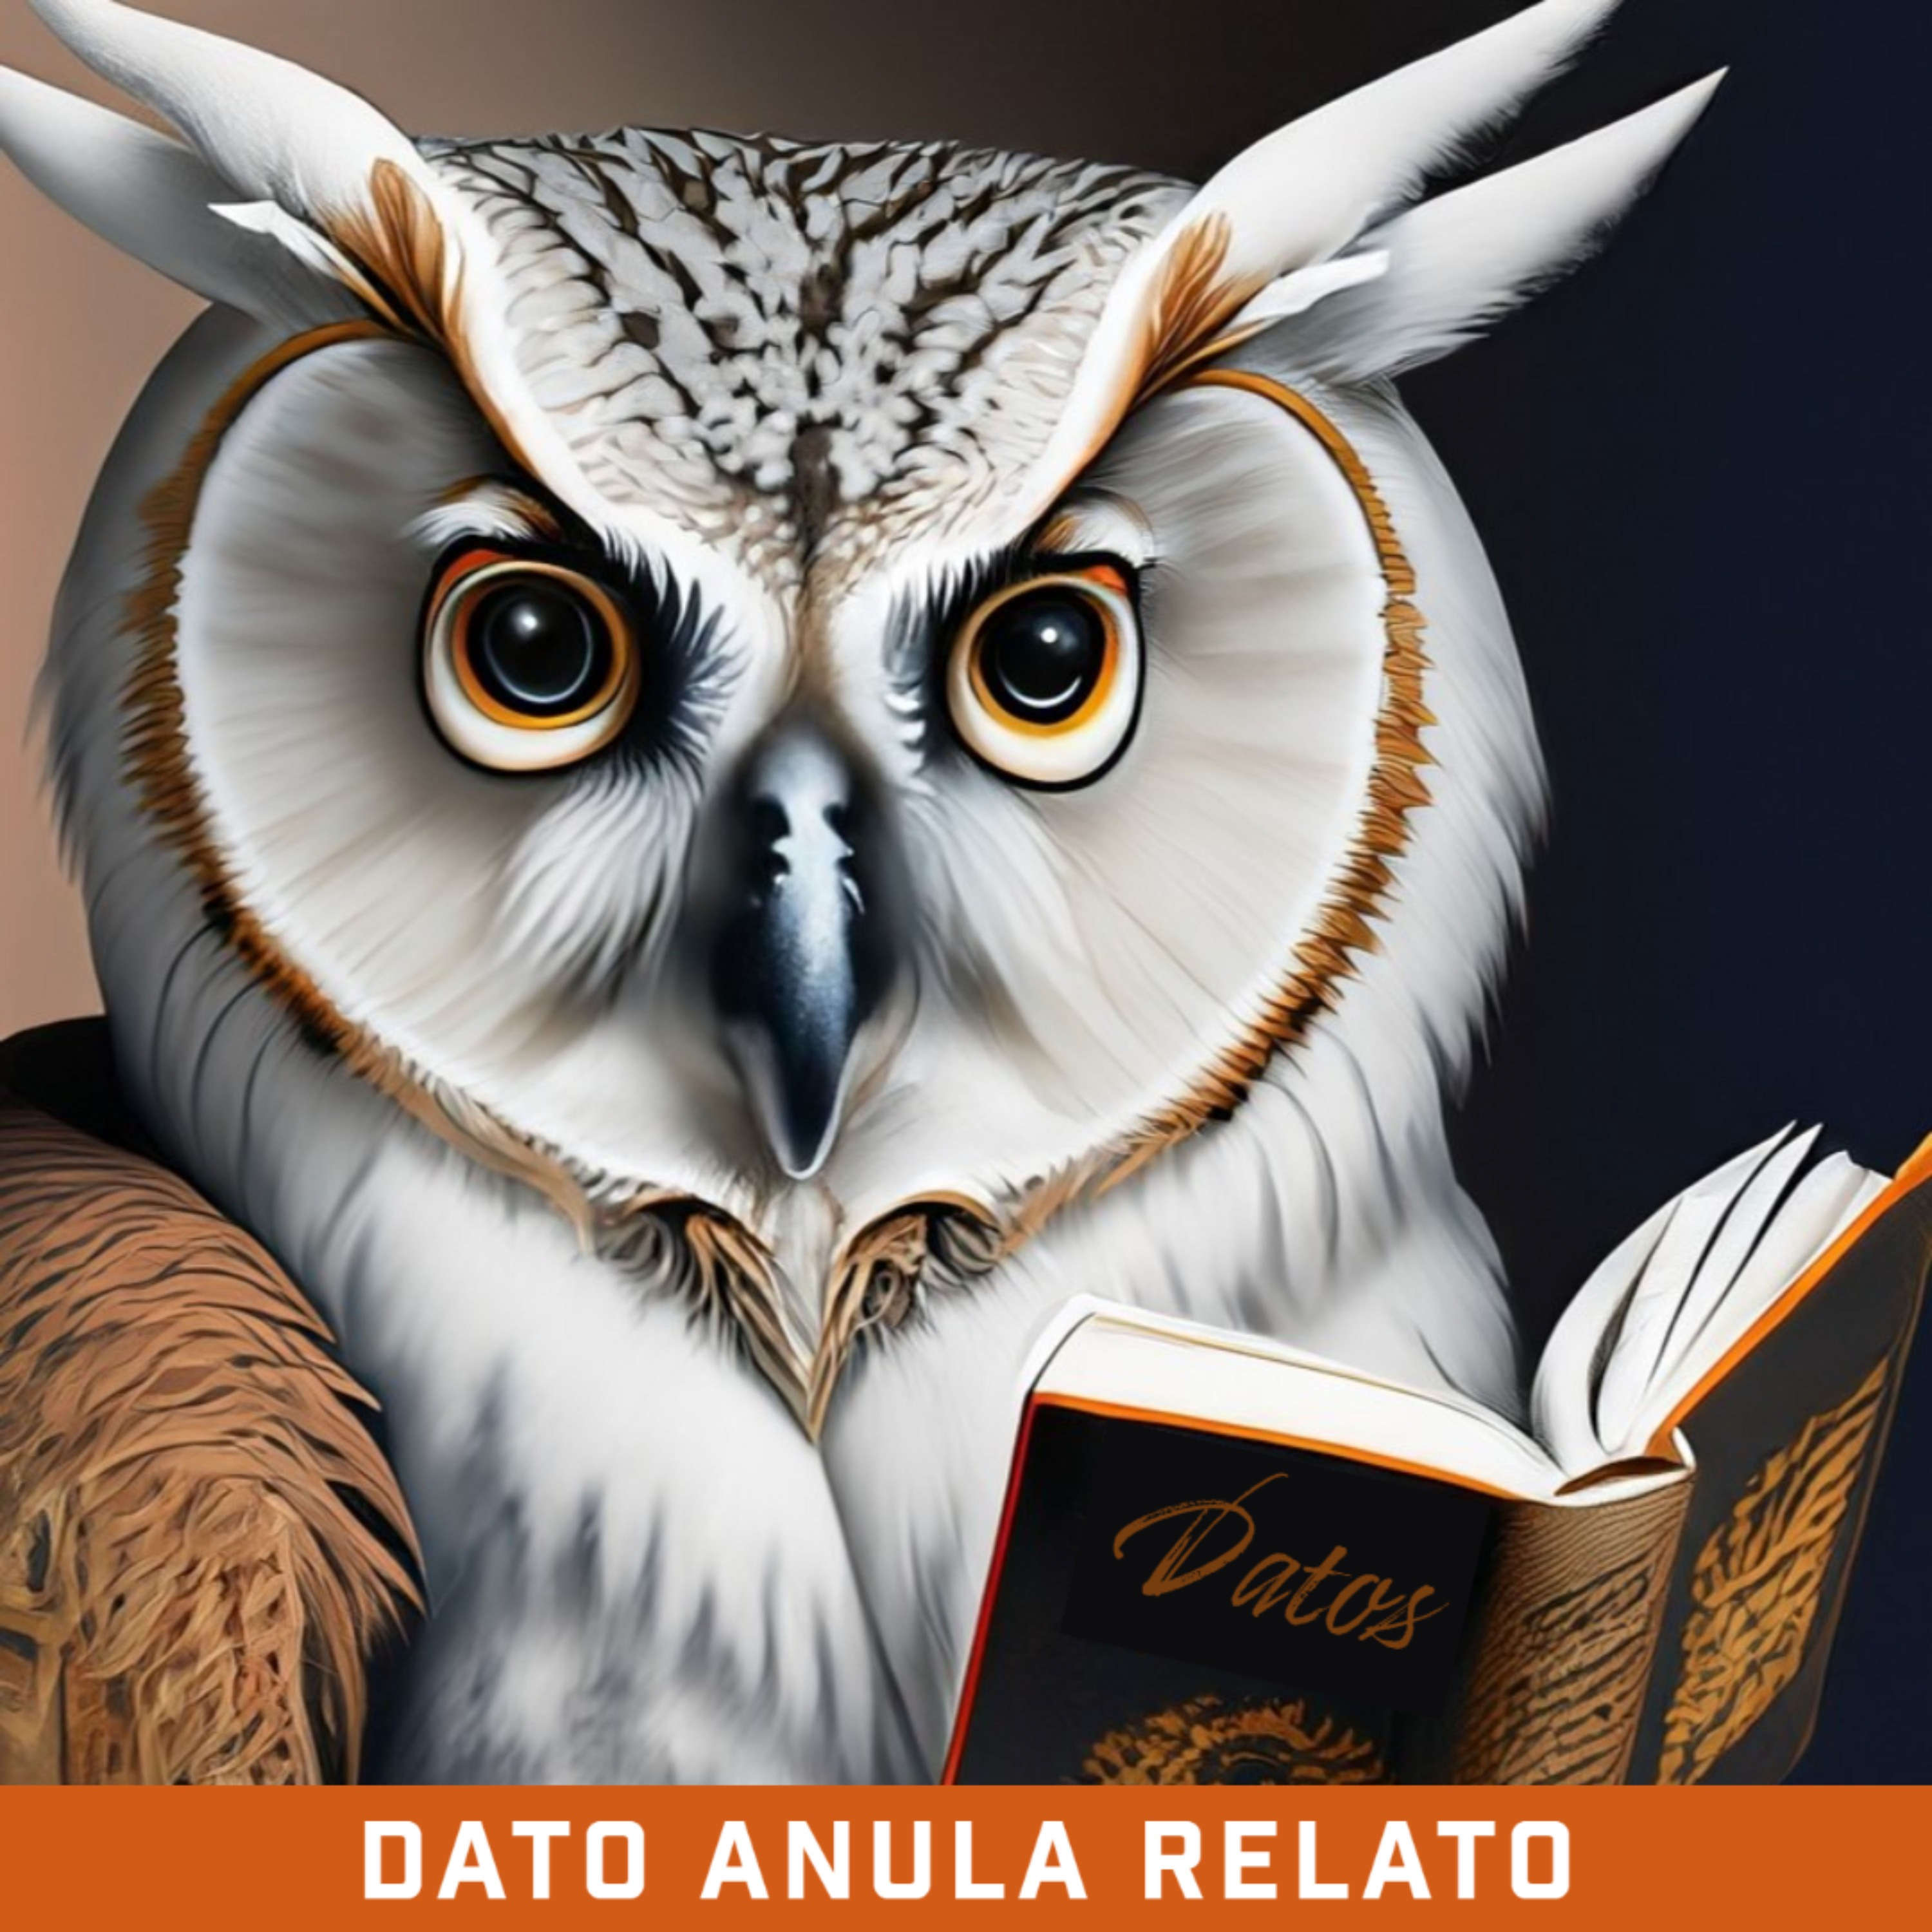 Show artwork for Dato anula relato